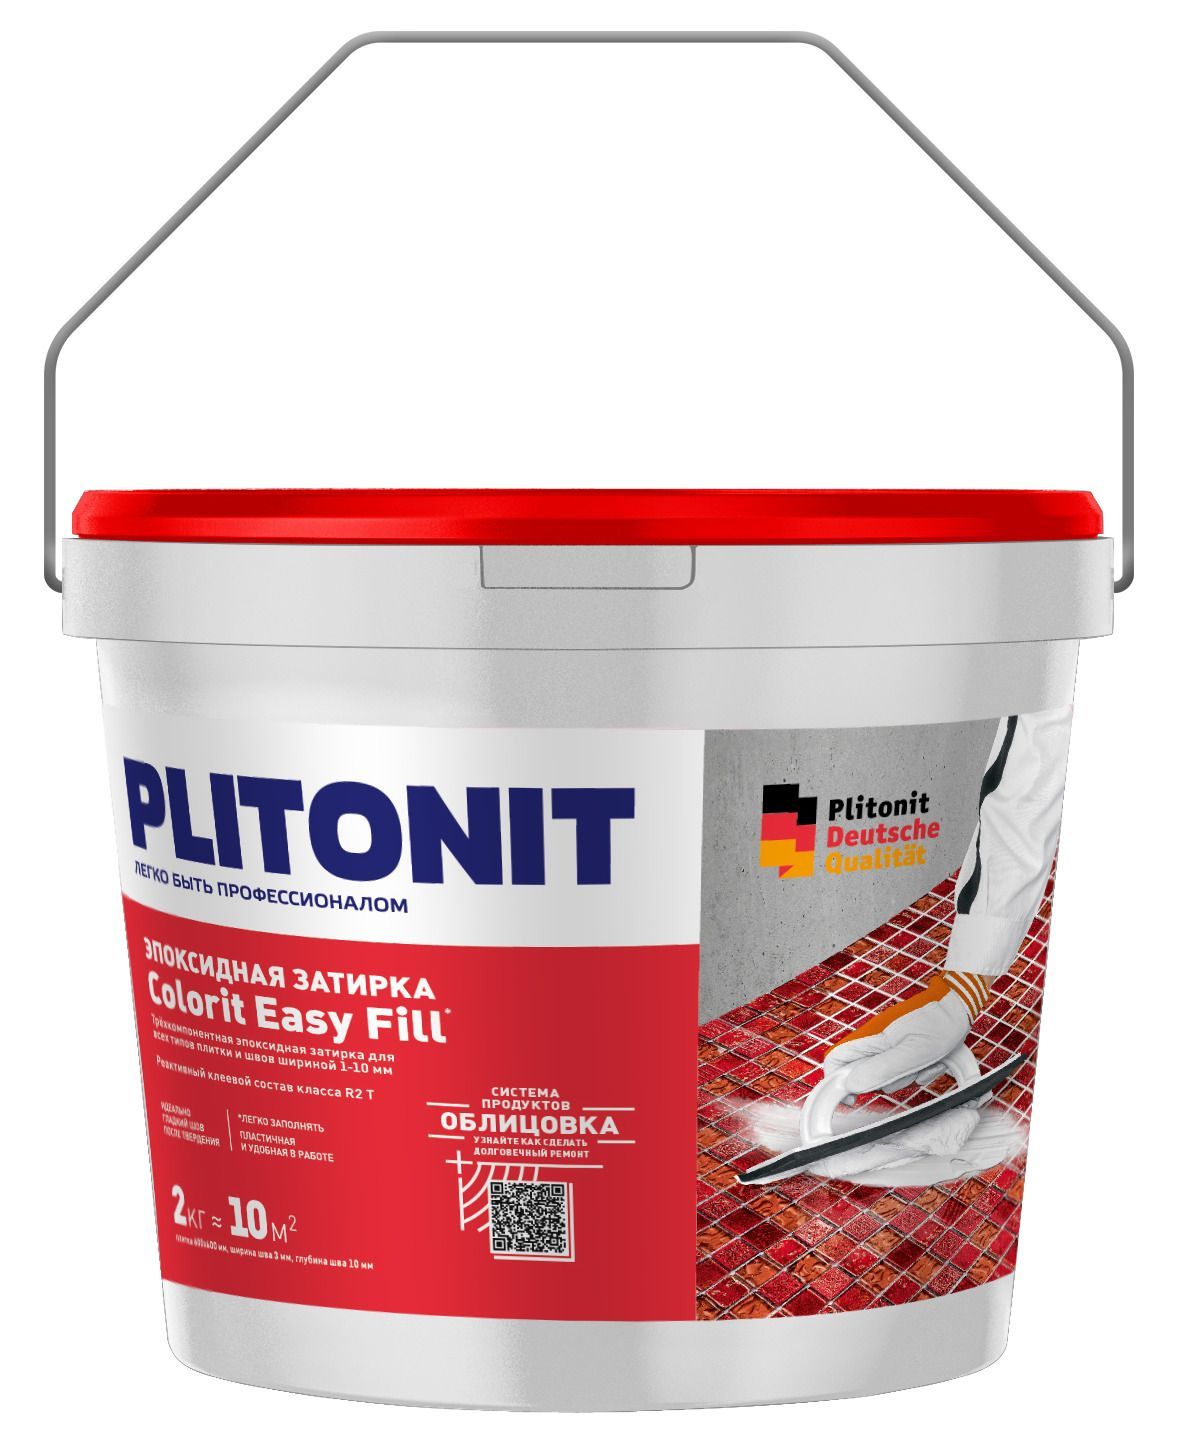 Купить Затирка эпоксидная PLITONIT Colorit EasyFill песочно-серый 2кг (ведро) Н008642